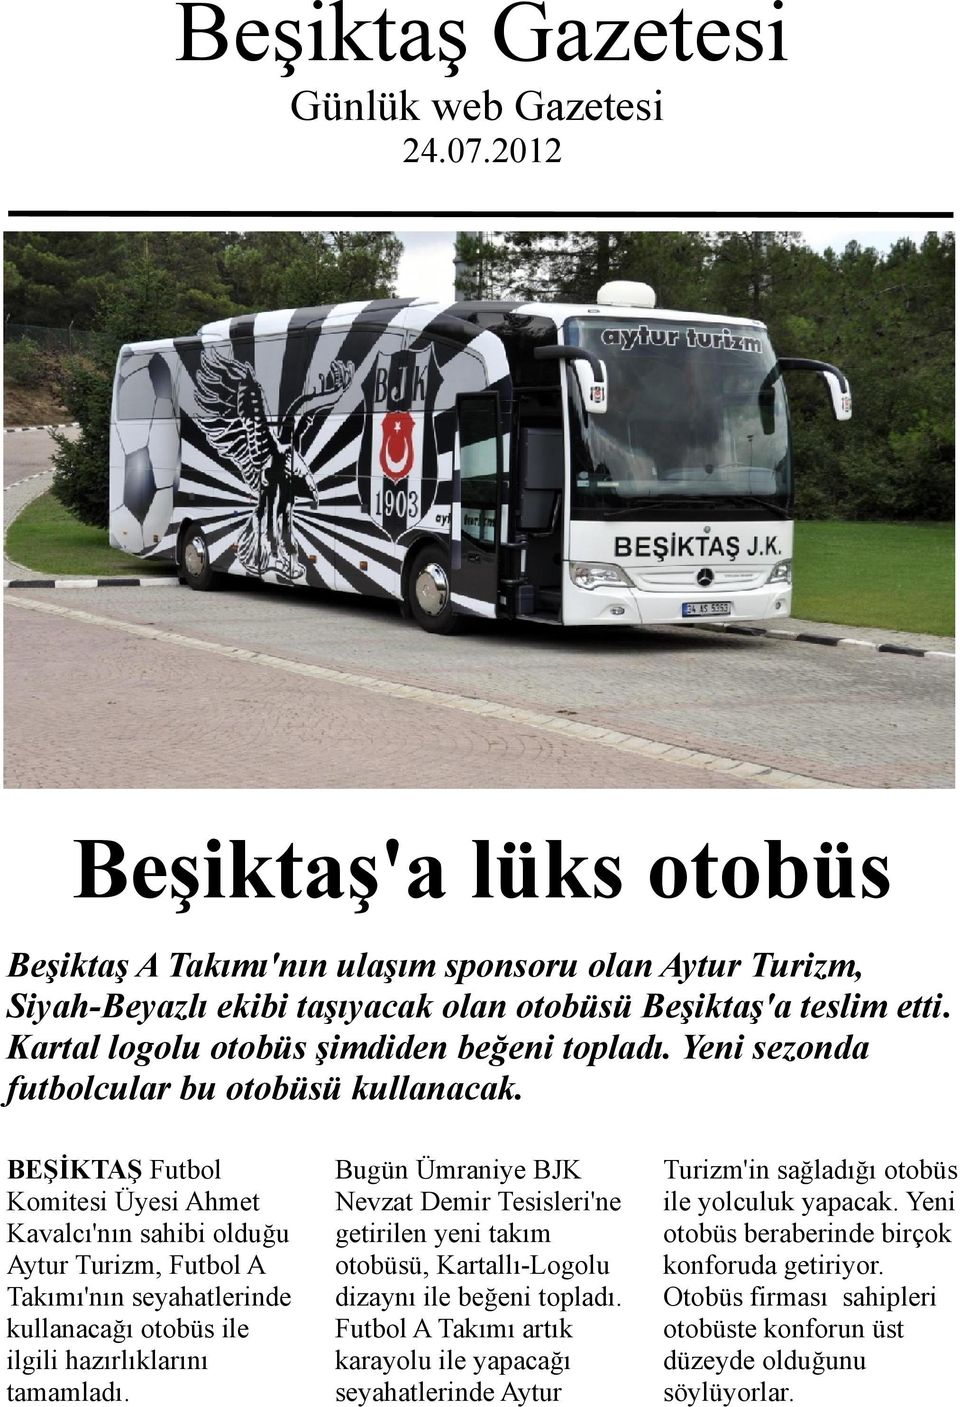 BEŞİKTAŞ Futbol Komitesi Üyesi Ahmet Kavalcı'nın sahibi olduğu Aytur Turizm, Futbol A Takımı'nın seyahatlerinde kullanacağı otobüs ile ilgili hazırlıklarını tamamladı.